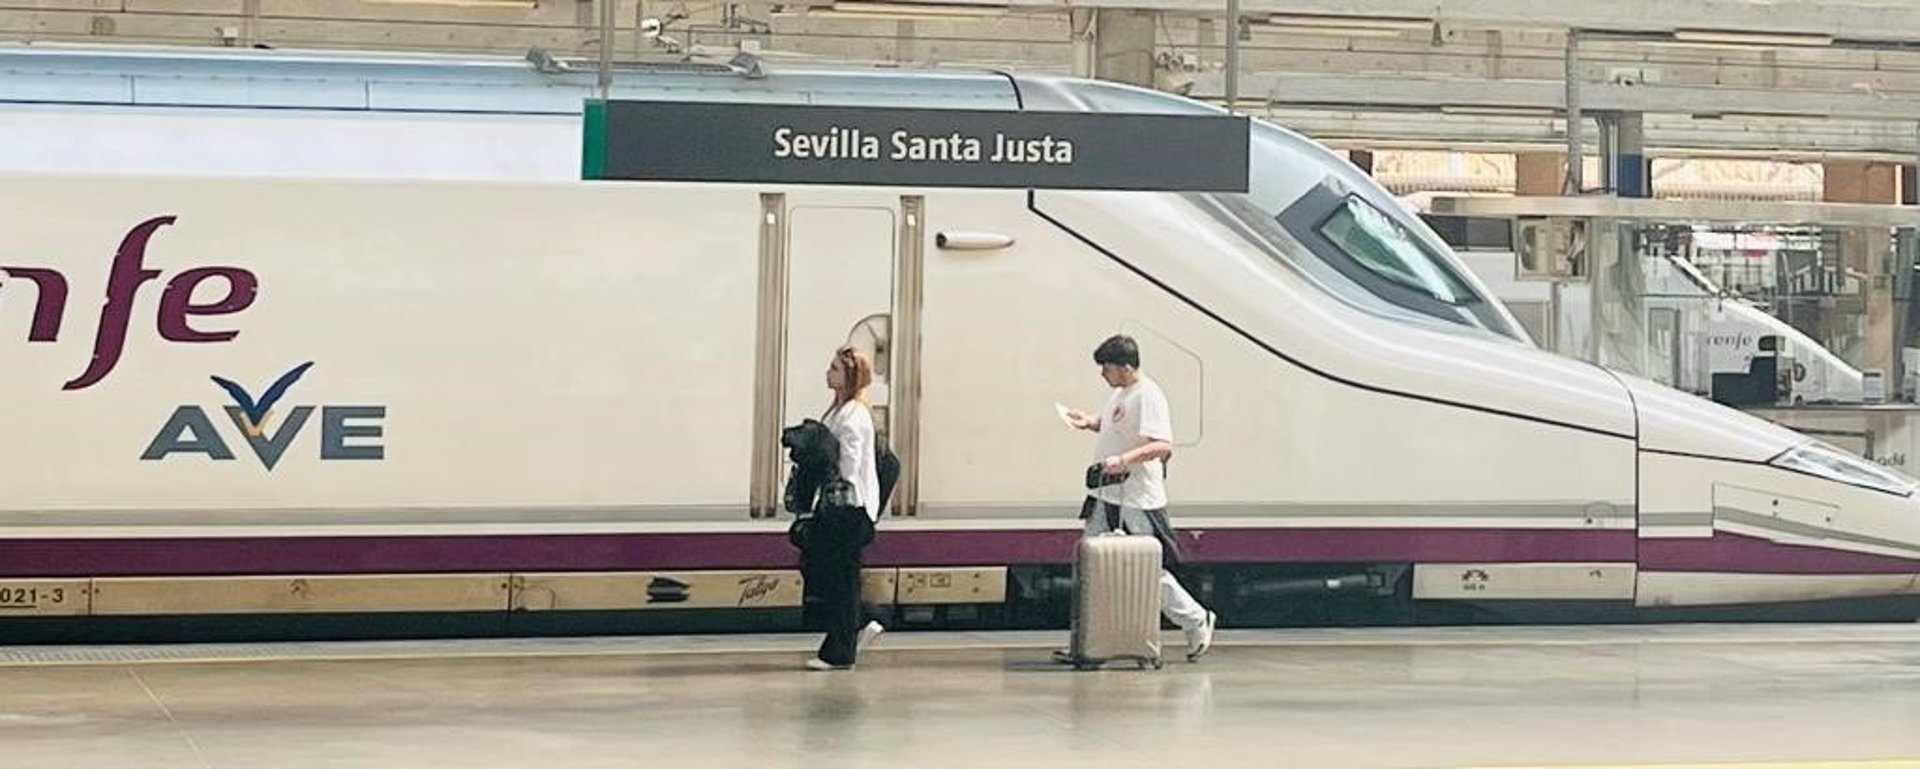 La estación de Renfe Santa Justa en Sevilla. | Fuente: Europa Press